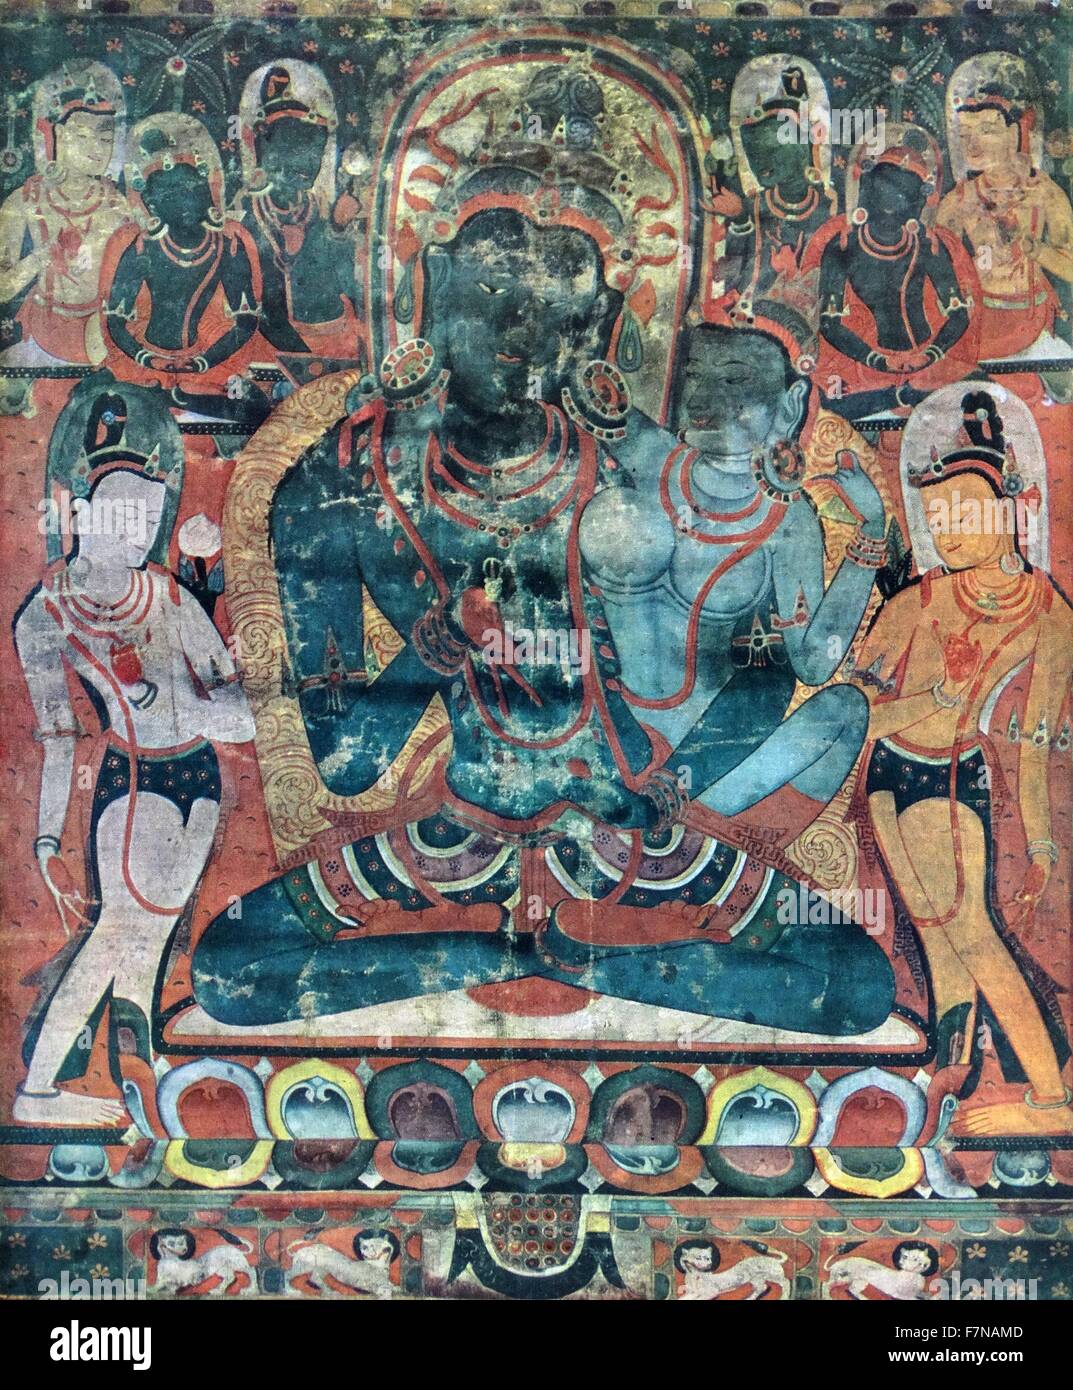 Vajradhara Bouddha avec consort. Peinture tibétaine au sol à l'aide de pigments minéraux sur le coton. 16e siècle Banque D'Images